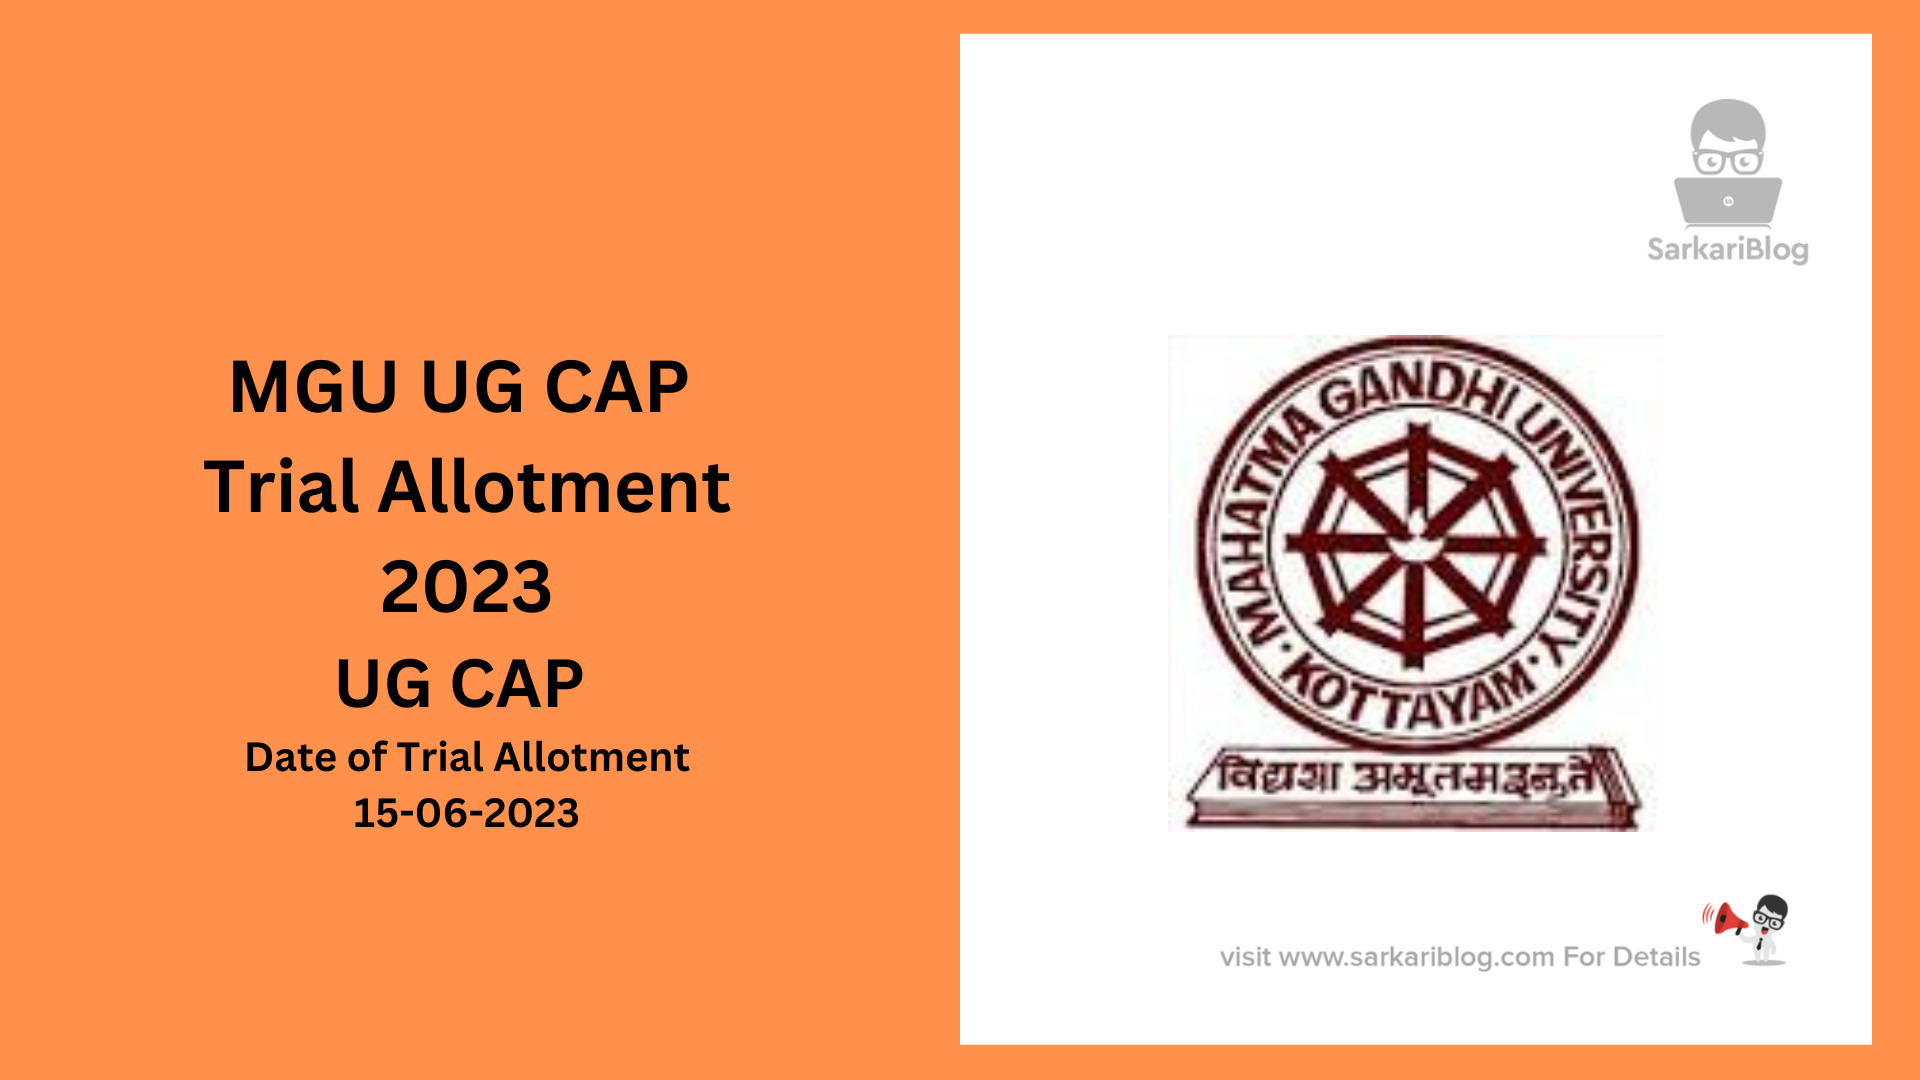 MGU UG CAP Trial Allotment 2023